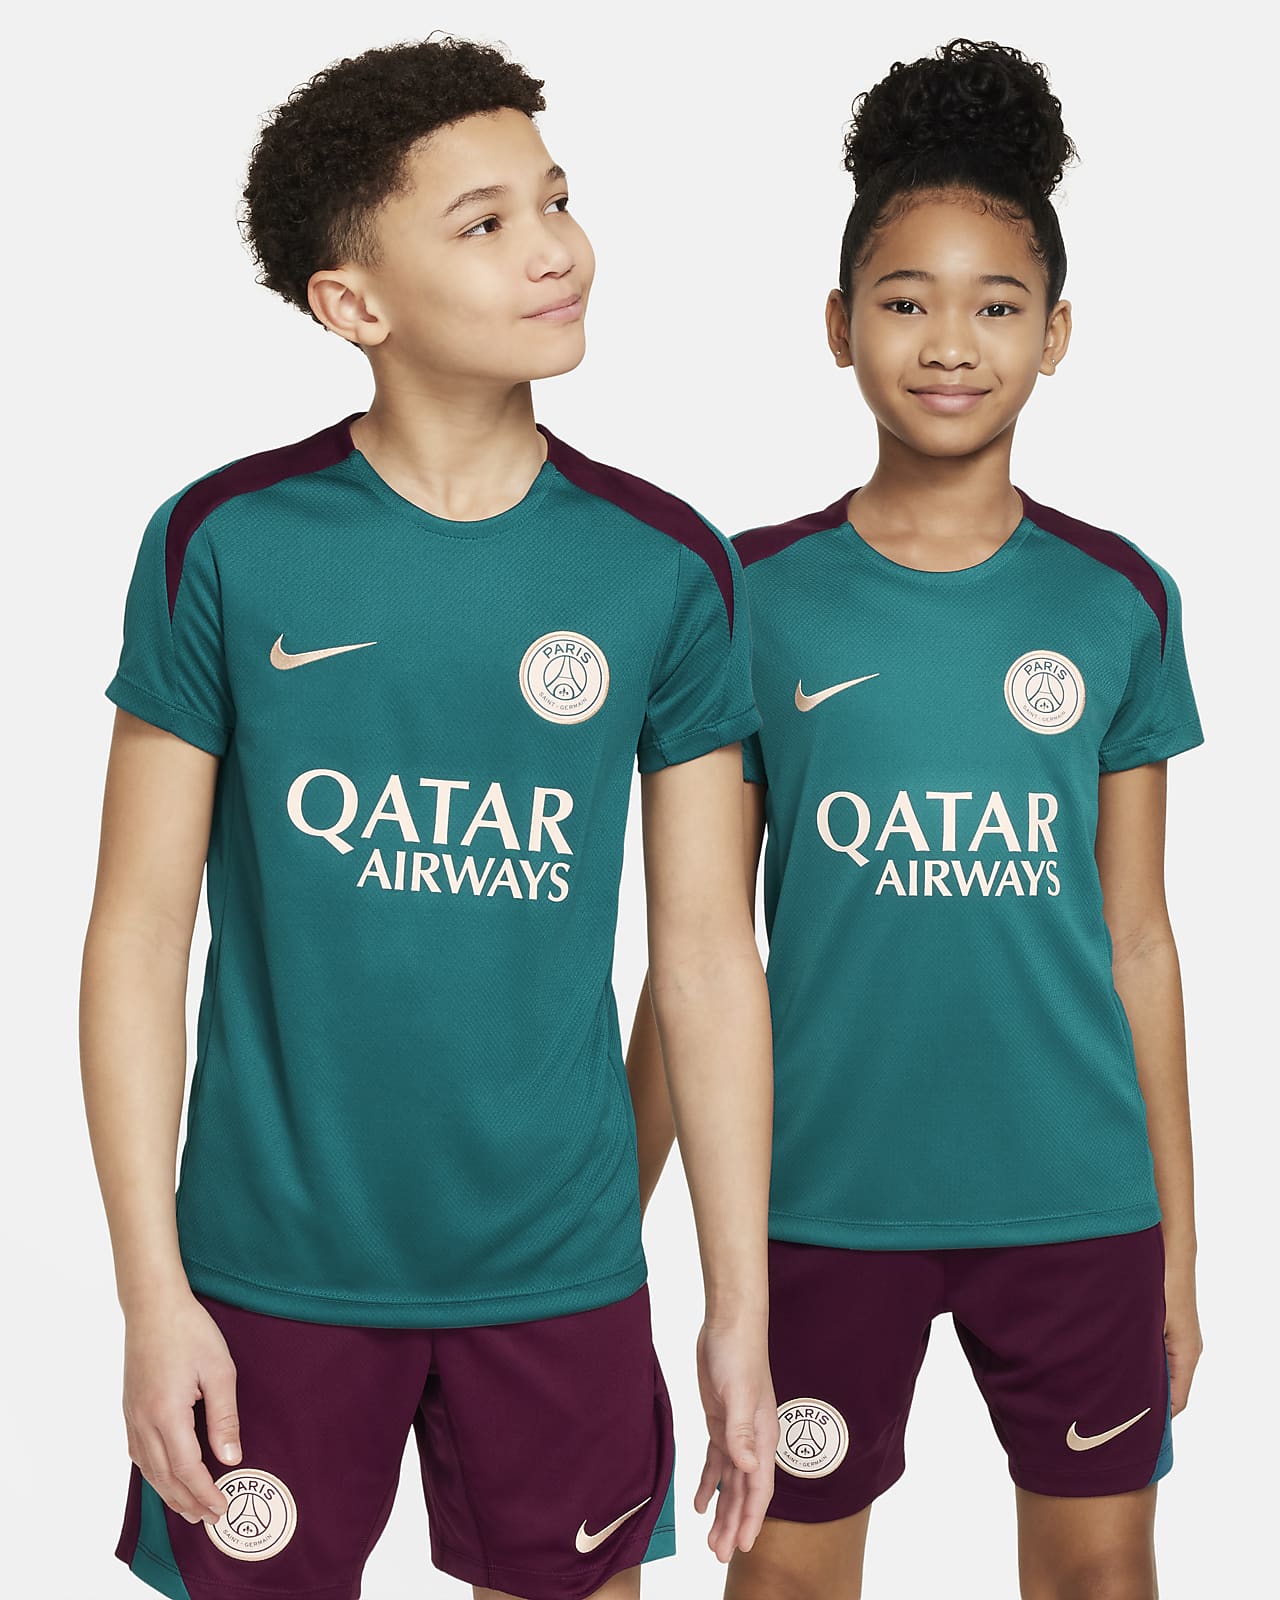 Pleteninové fotbalové tričko Nike Dri-FIT Paris Saint-Germain Strike s krátkým rukávem pro větší děti